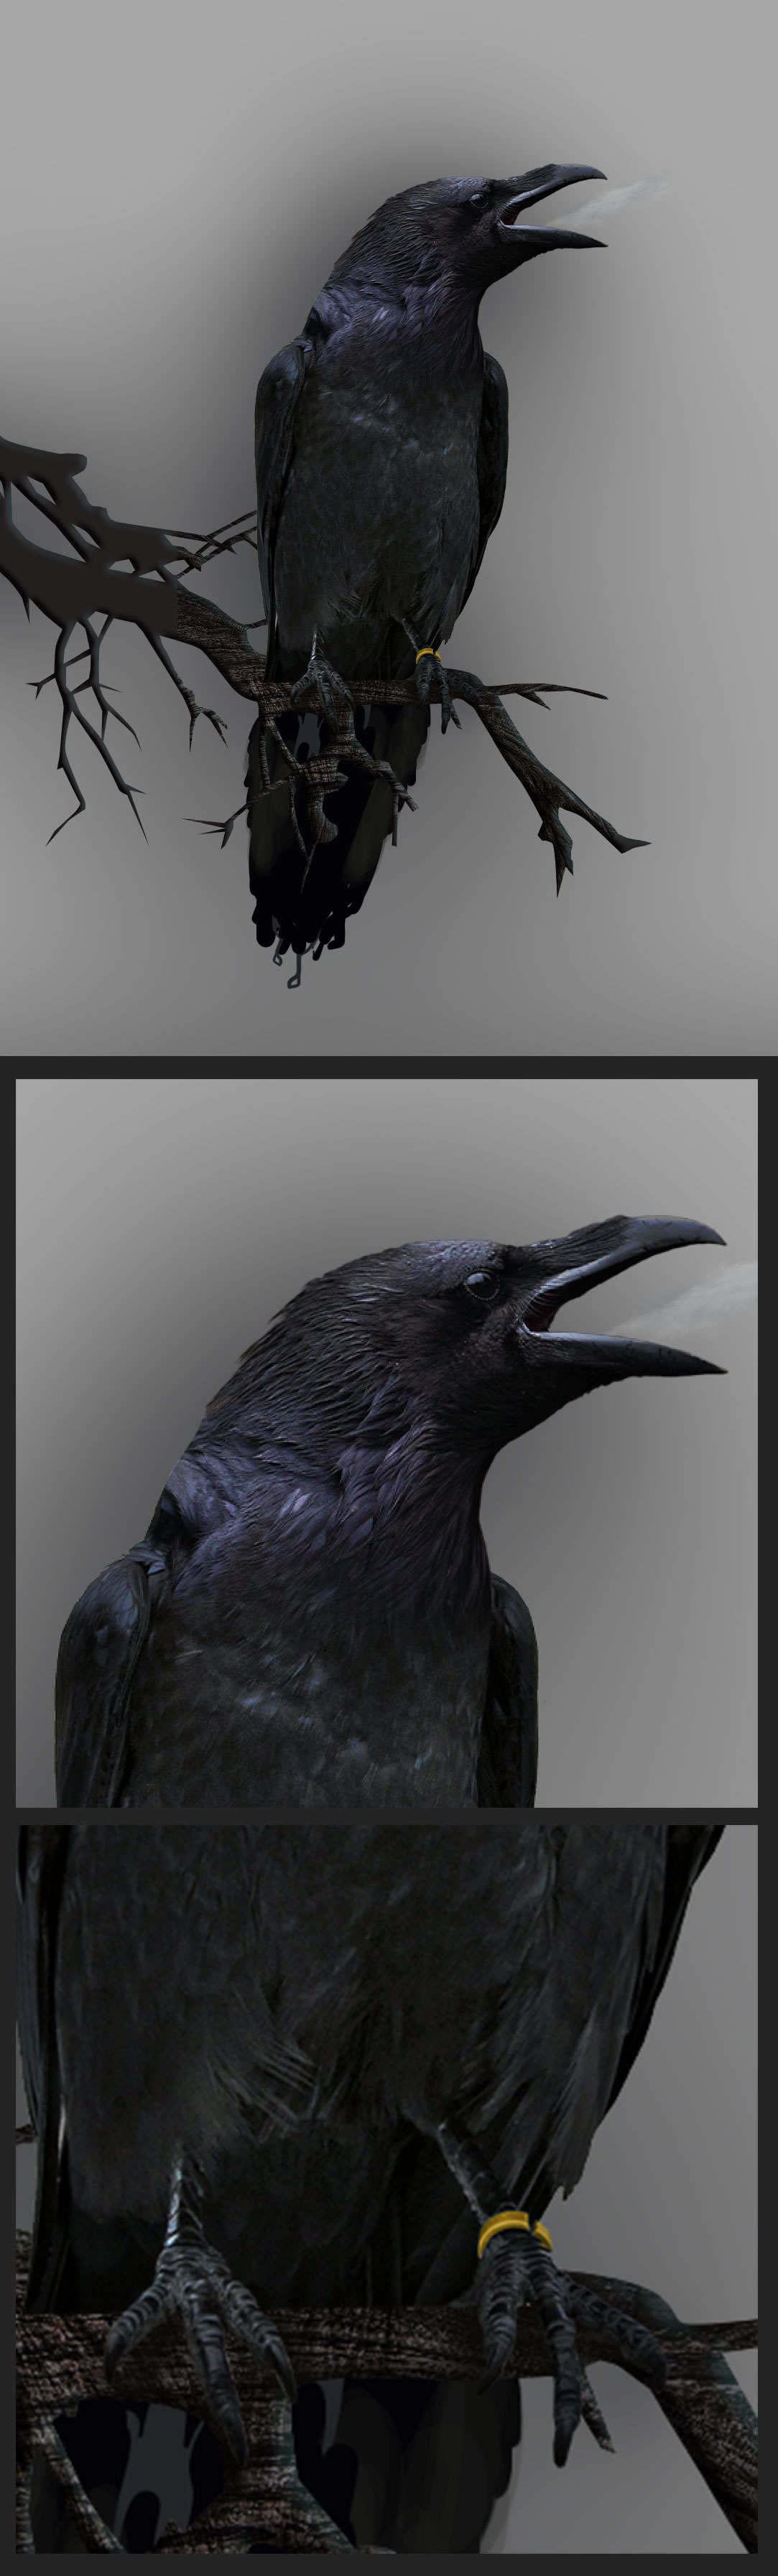 horror scarytales tvc estimese blindmedia crow dark Mystic viasat